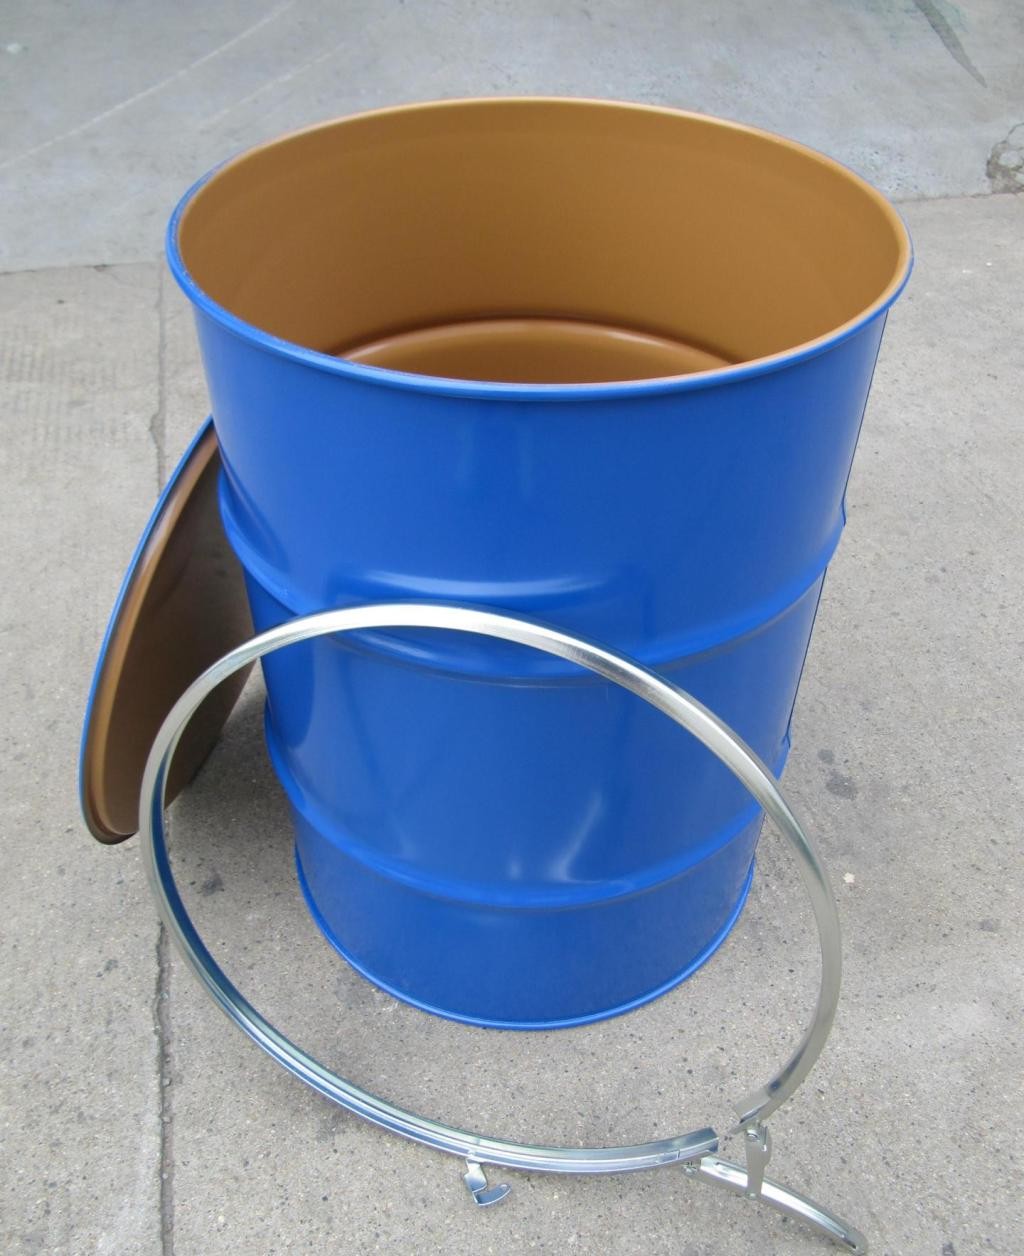 带黑色把手的塑料蓝水桶 库存图片. 图片 包括有 产品, 经典, 从事园艺, 容器, 新建, 家庭, 运载 - 166665021